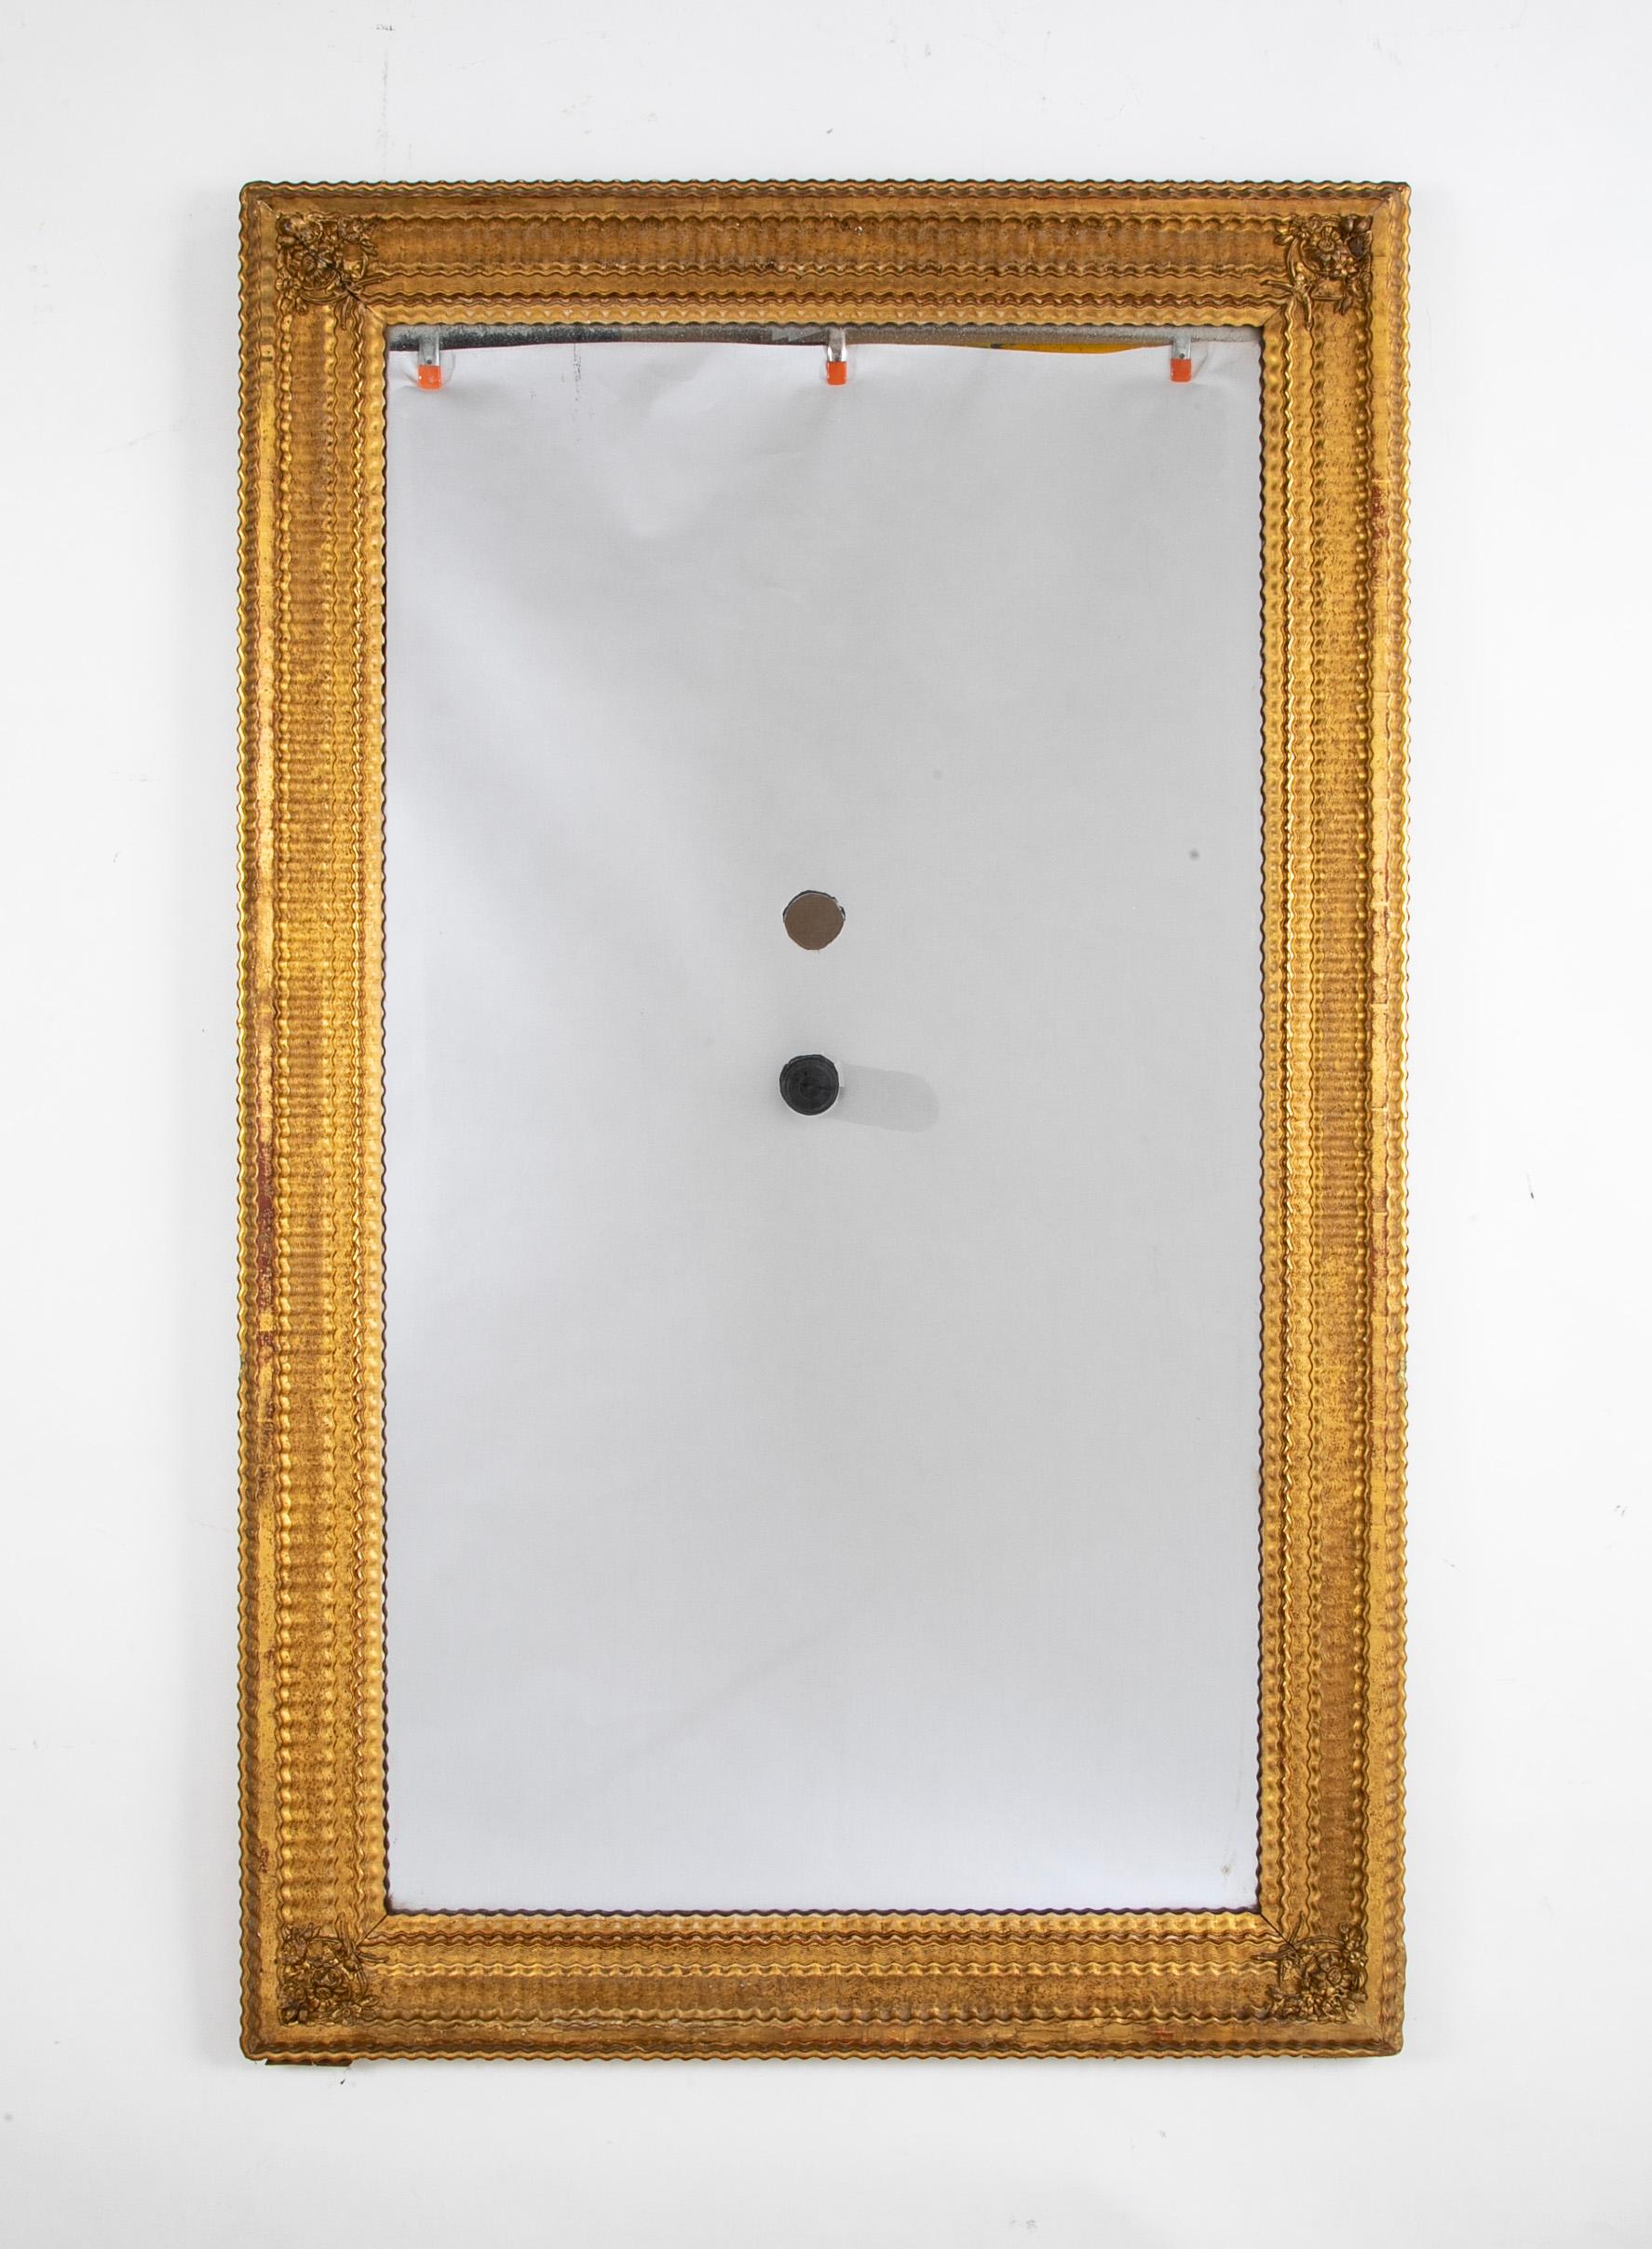 Miroir français en verre ancien avec cadre en bois doré et tabliers feuillagés dans les angles. 